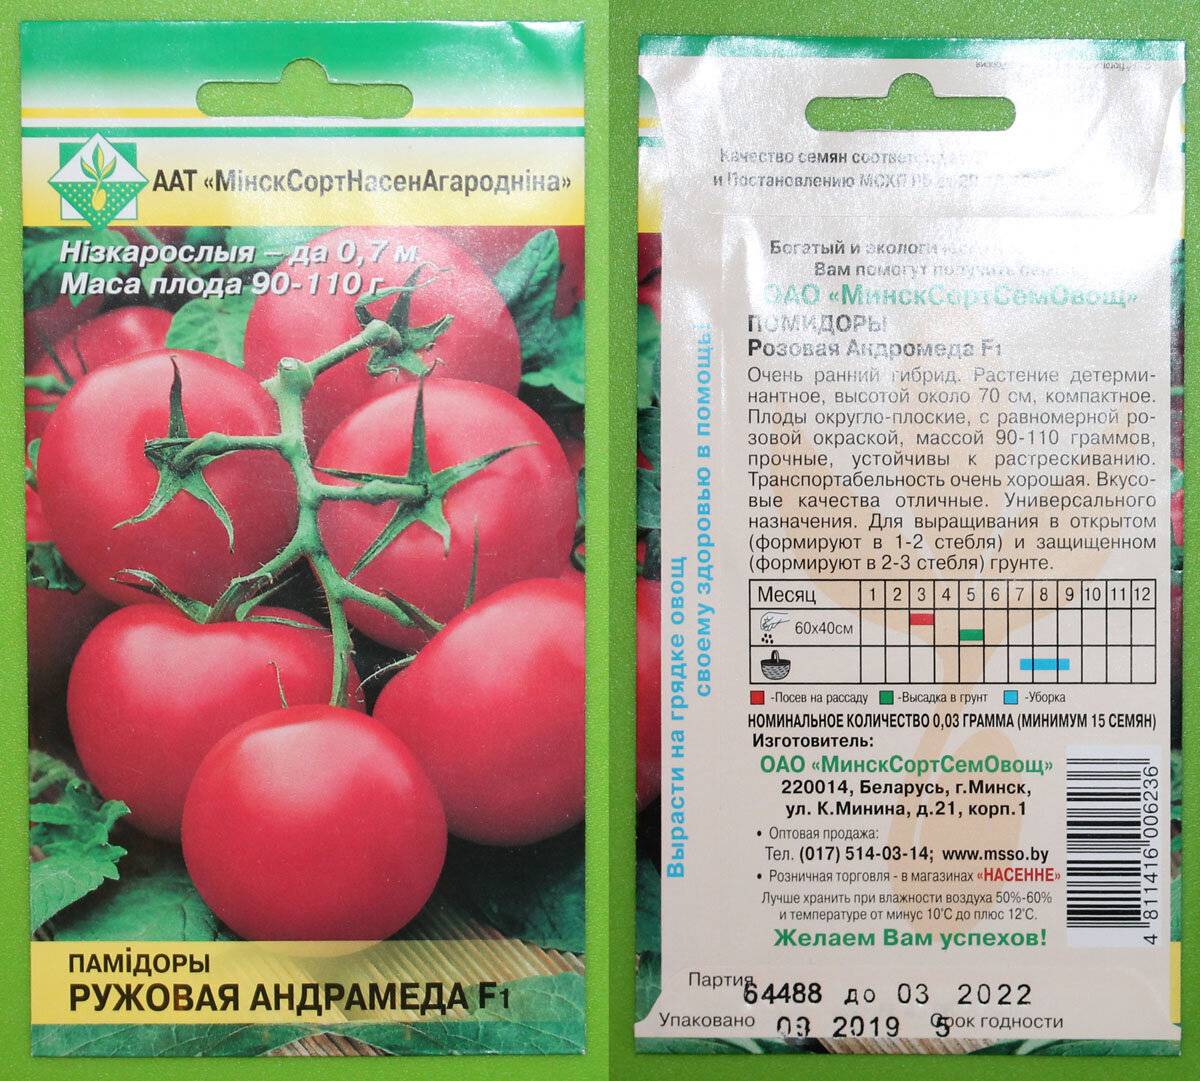 Характеристика и полное описание томата стерлядь f1 — особенности выращивания урожайного гибрида